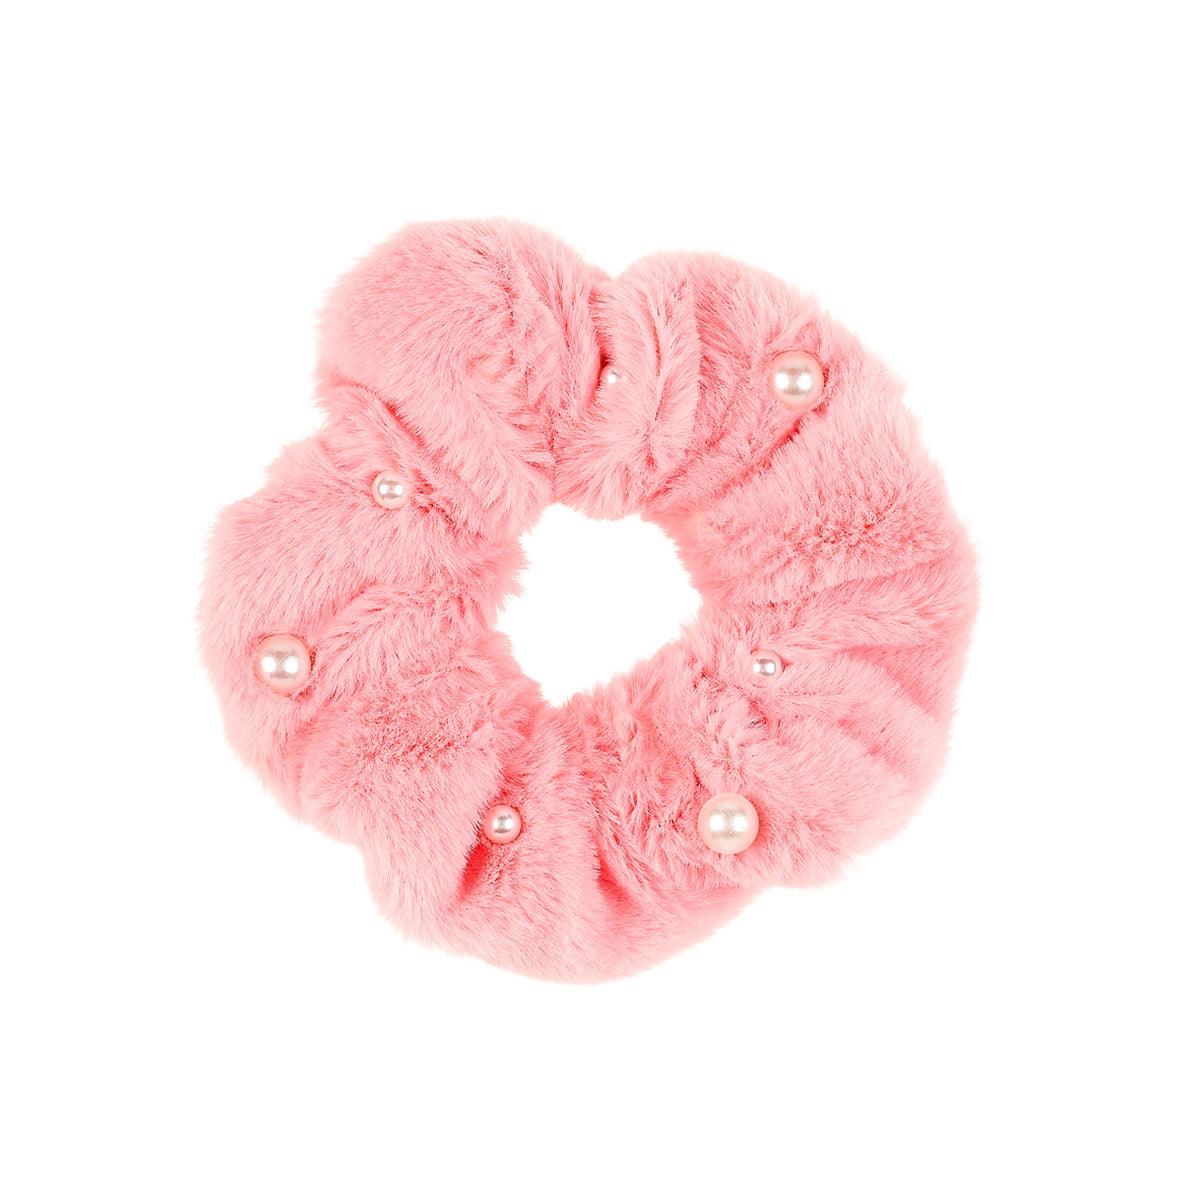 De Salome haarscrunchy is een superschattige fluffy elastiek van Souza! Functioneel en hip, in de kleur roze met parels. Een musthave haar accessoire voor hippe kindjes. VanZus